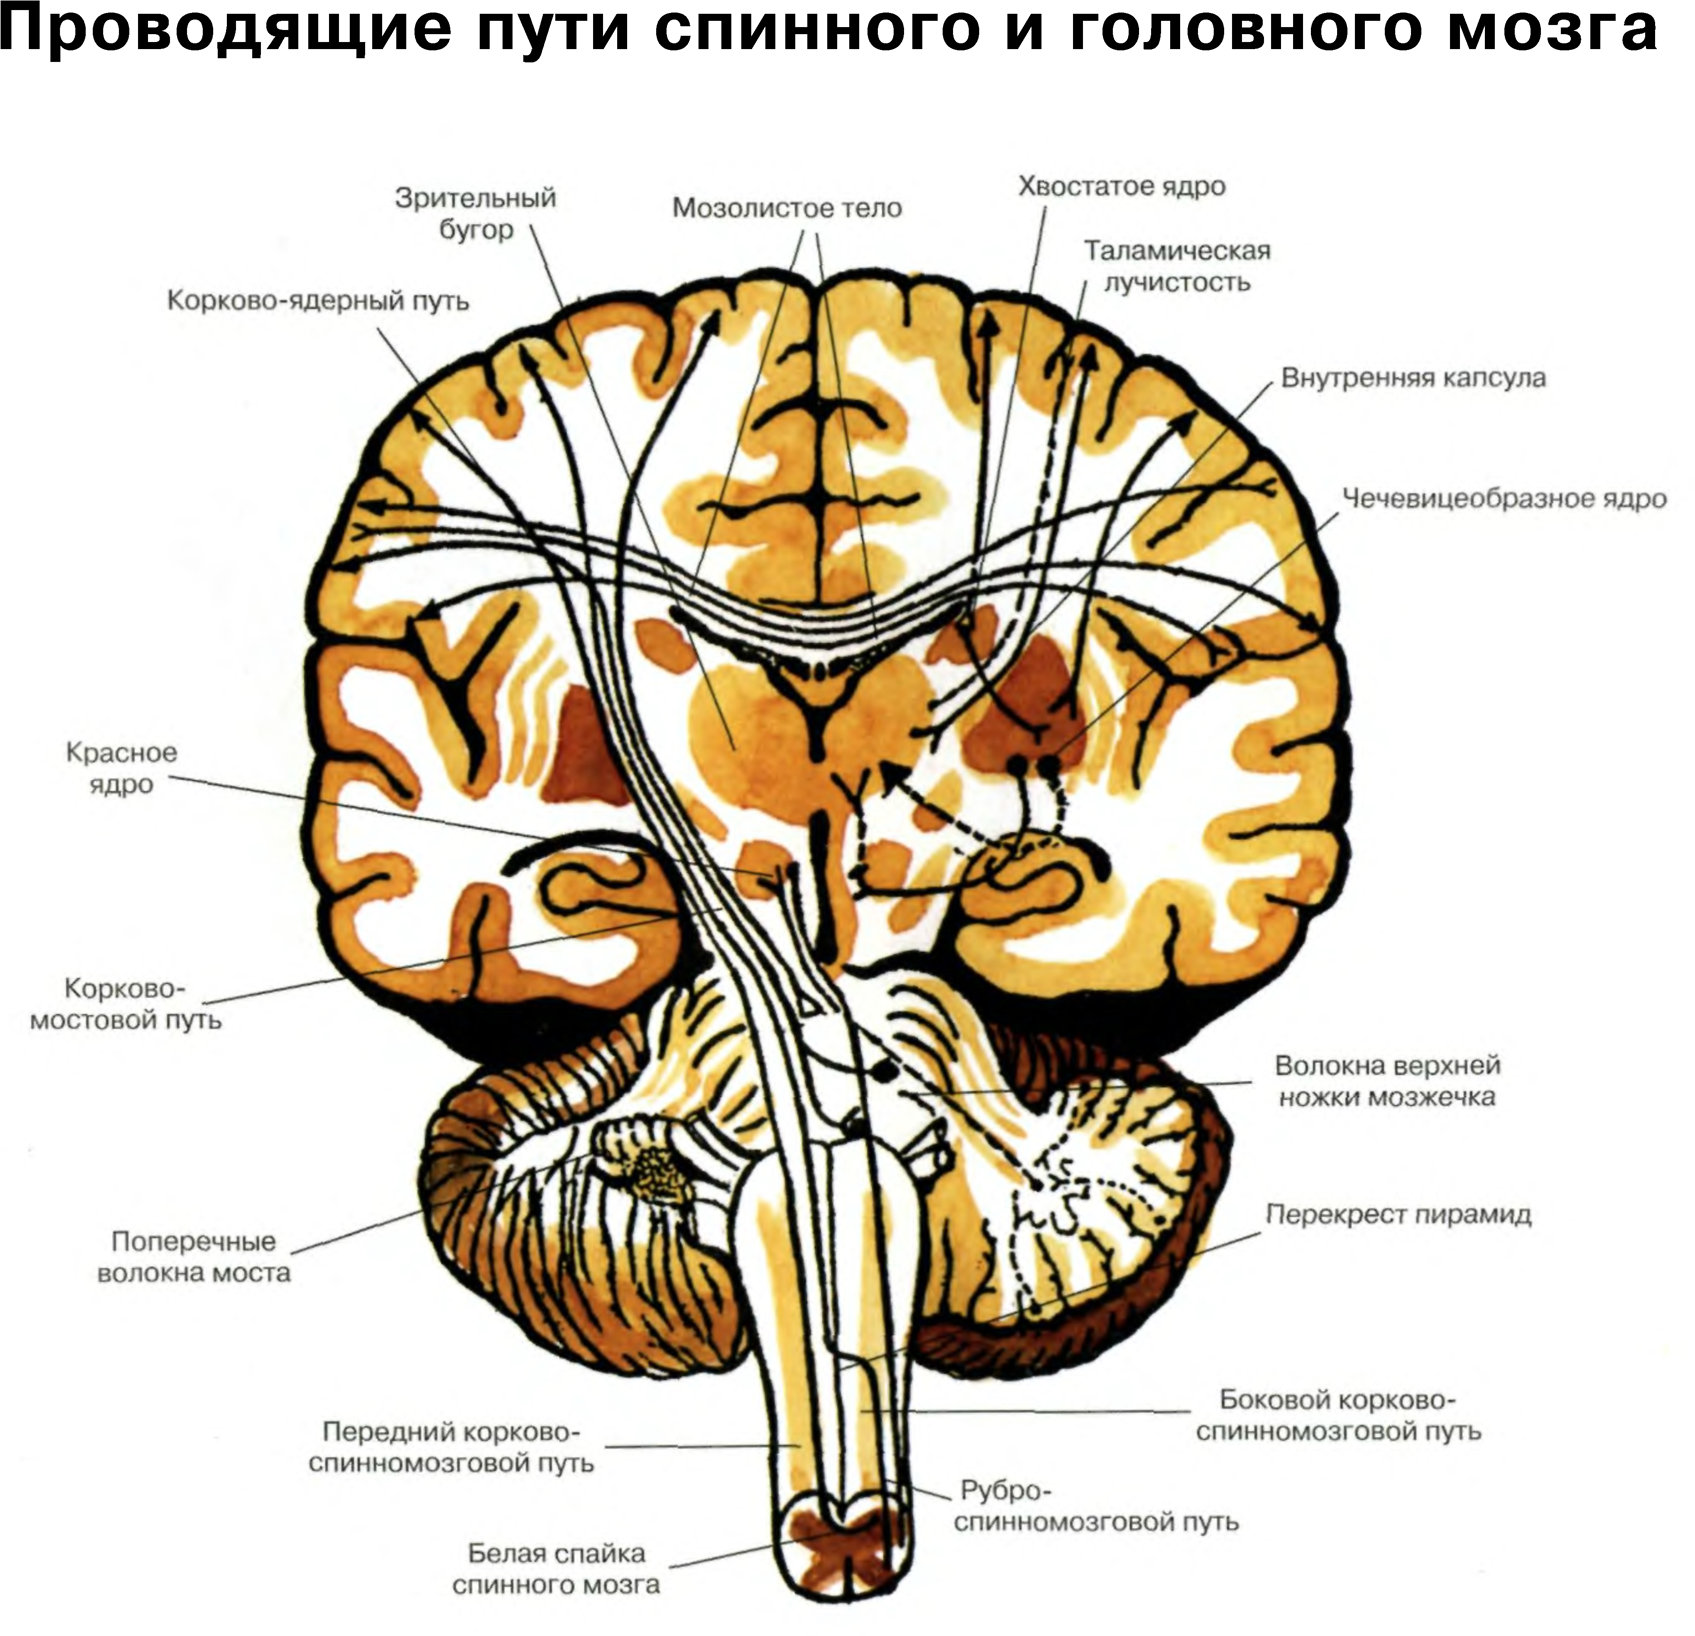 Проводящие системы головного мозга. Проводящие пути головного мозга восходящие и нисходящие. Чувствительные проводящие пути спинного и головного мозга анатомия. Схему восходящих путей спинного и головного мозга.. Проводящие пути спинной мозг анатомия строение.